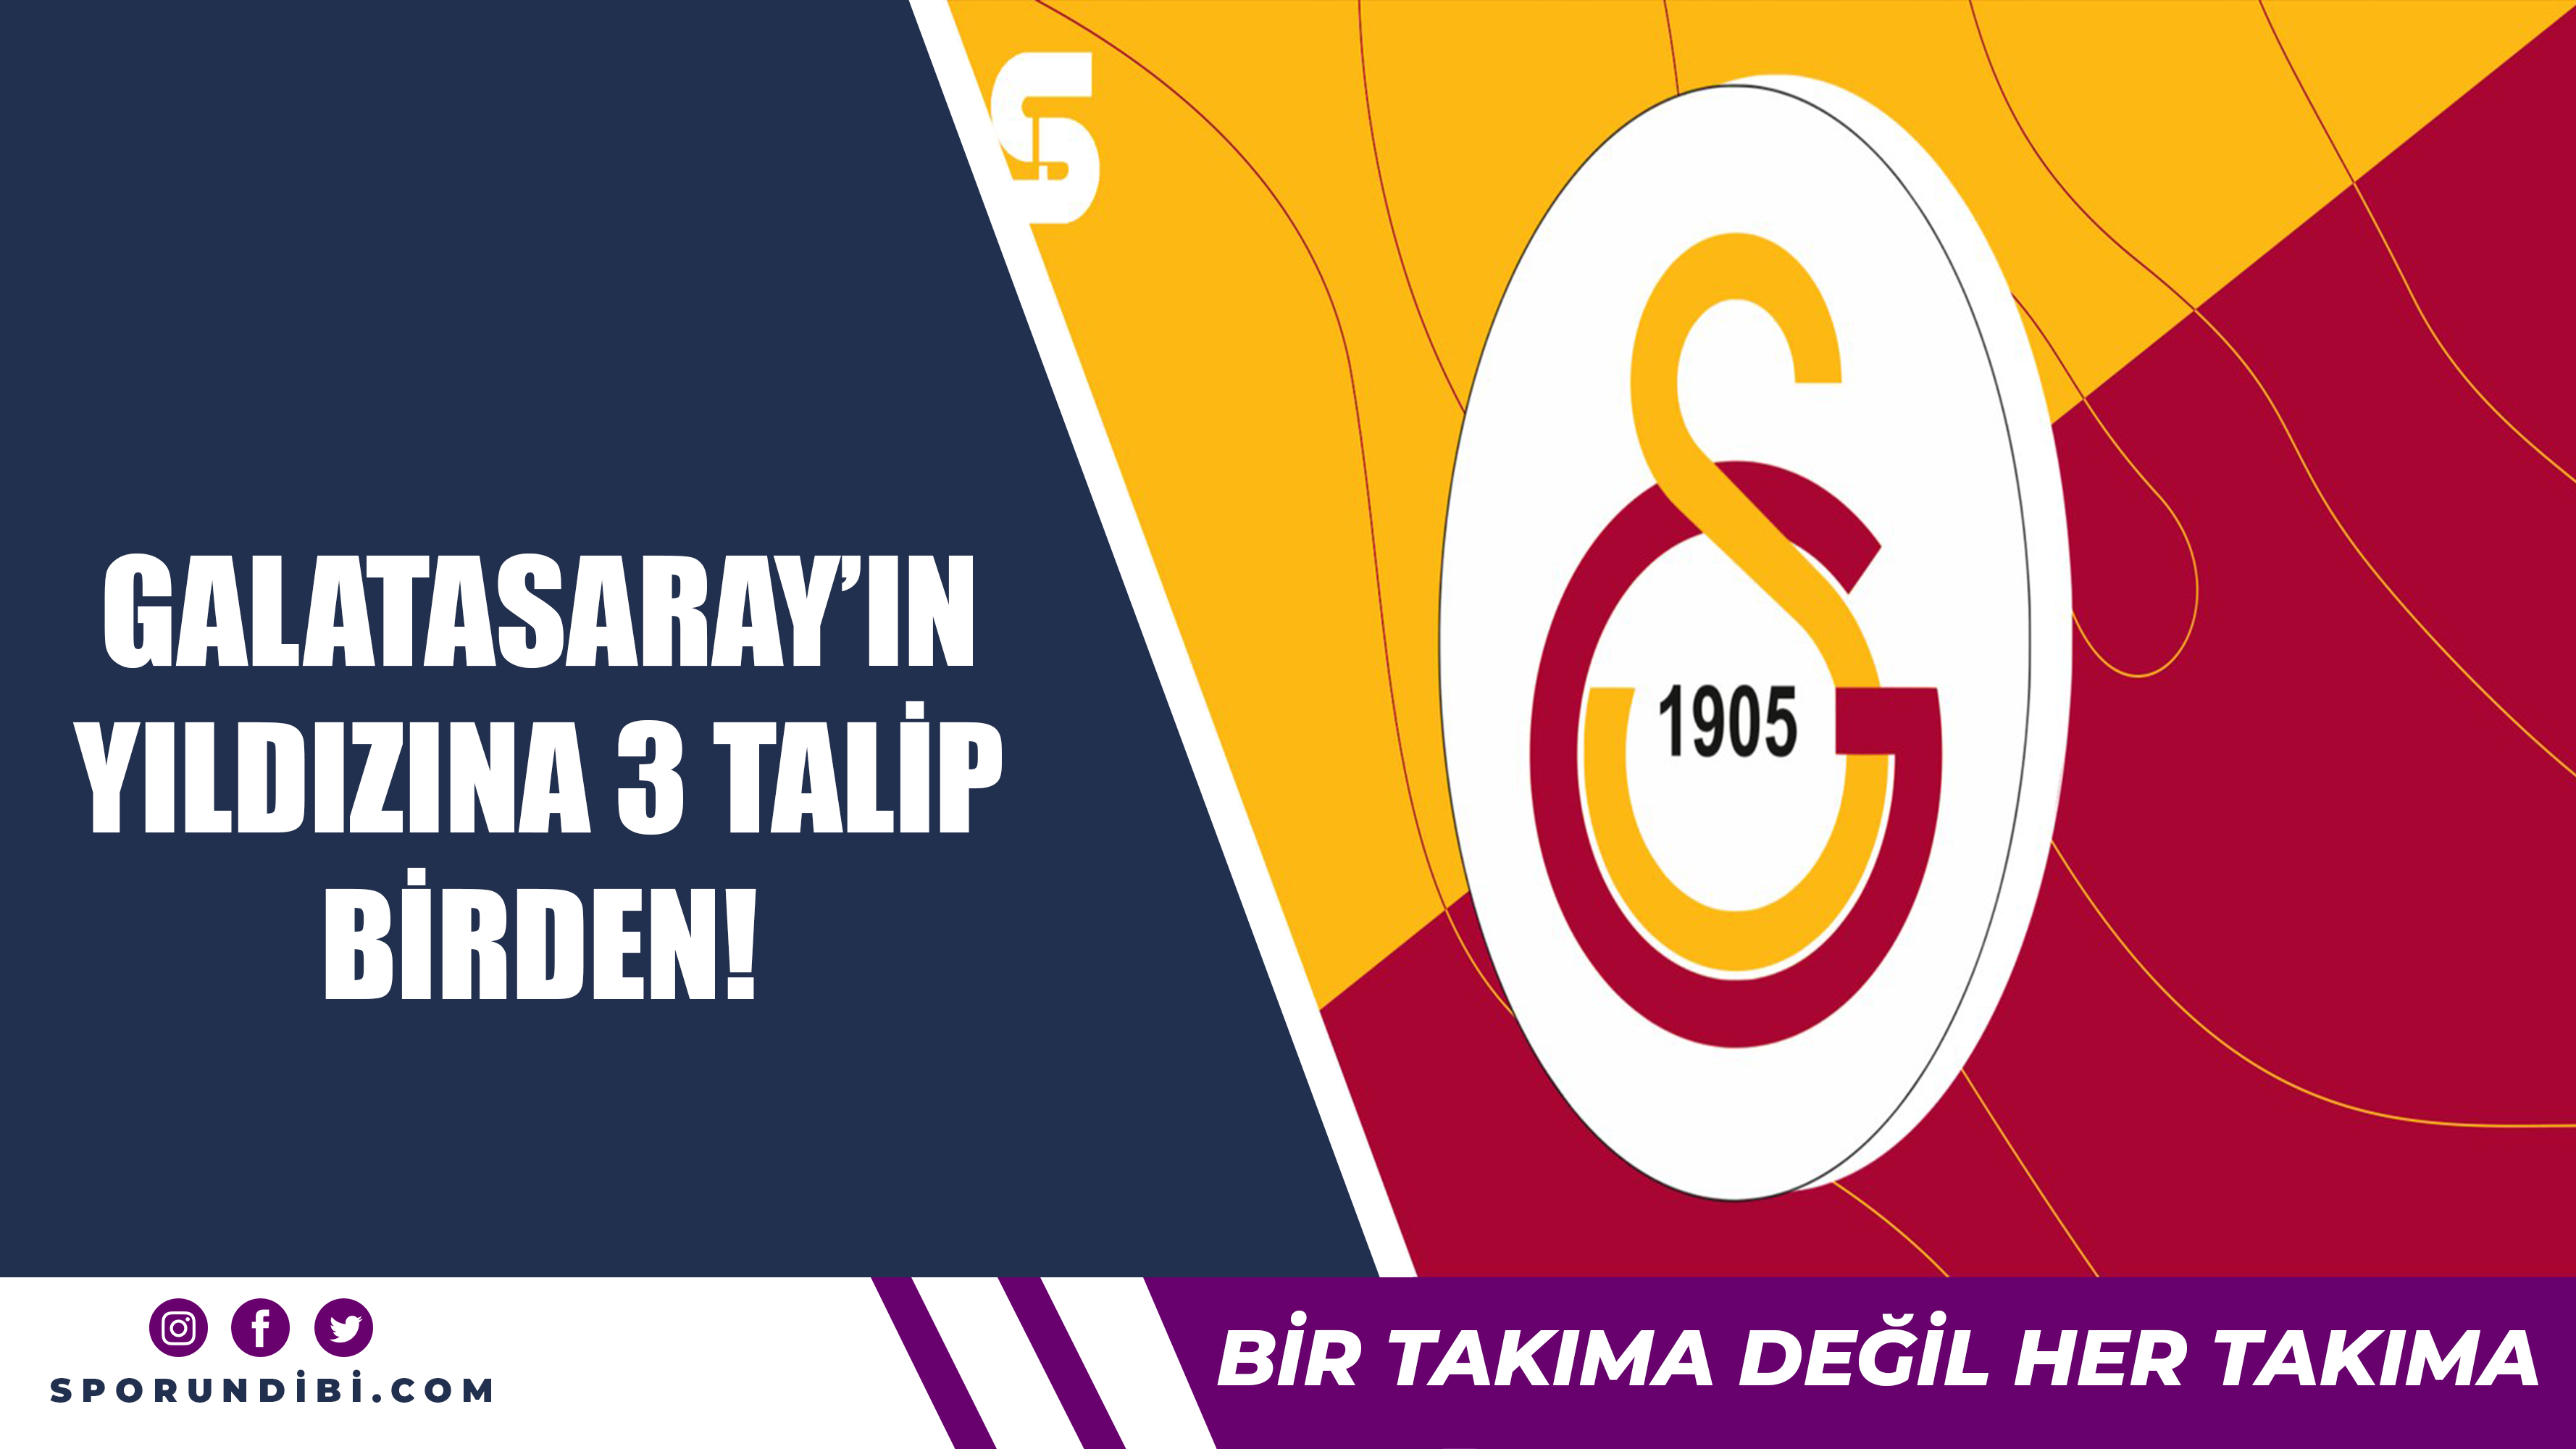 Galatasaray'ın yıldızına 3 talip birden!